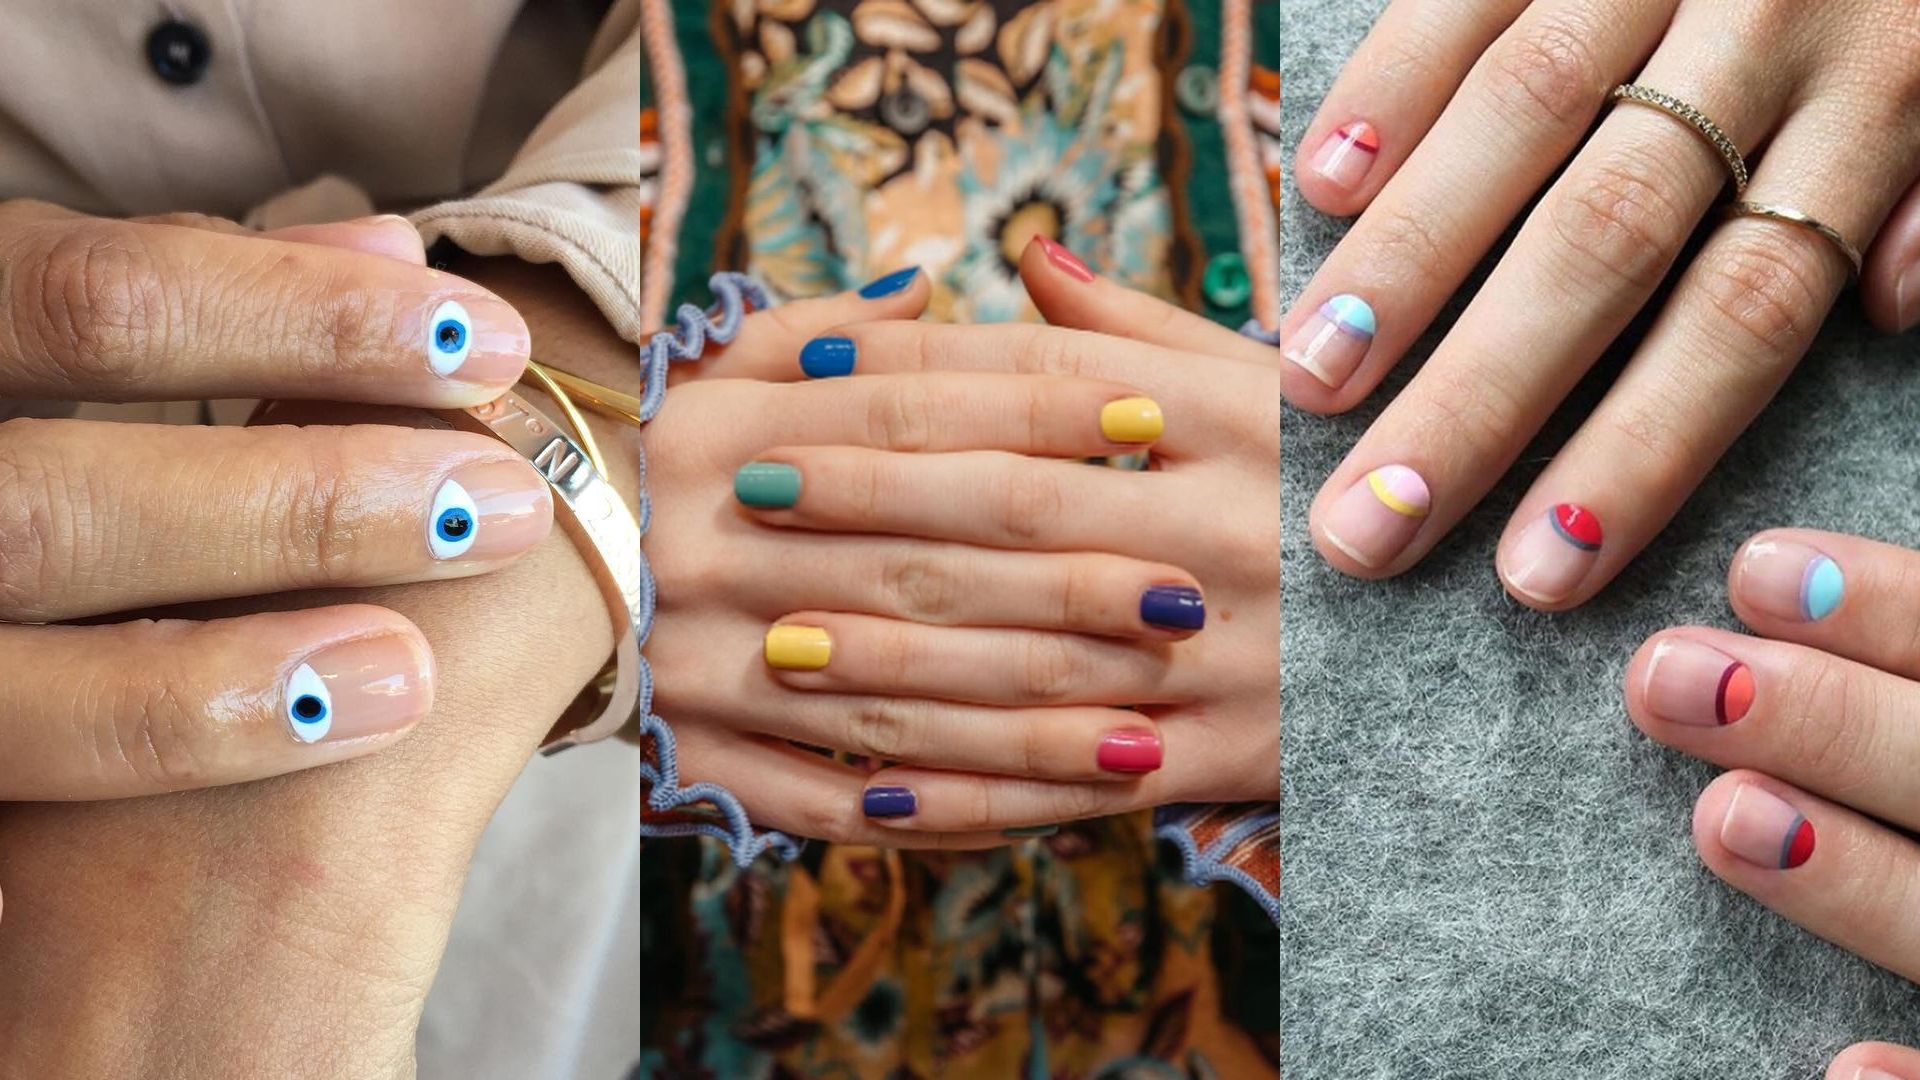 nail color trends 2020 | Short nail designs, Short nails, Nail trends